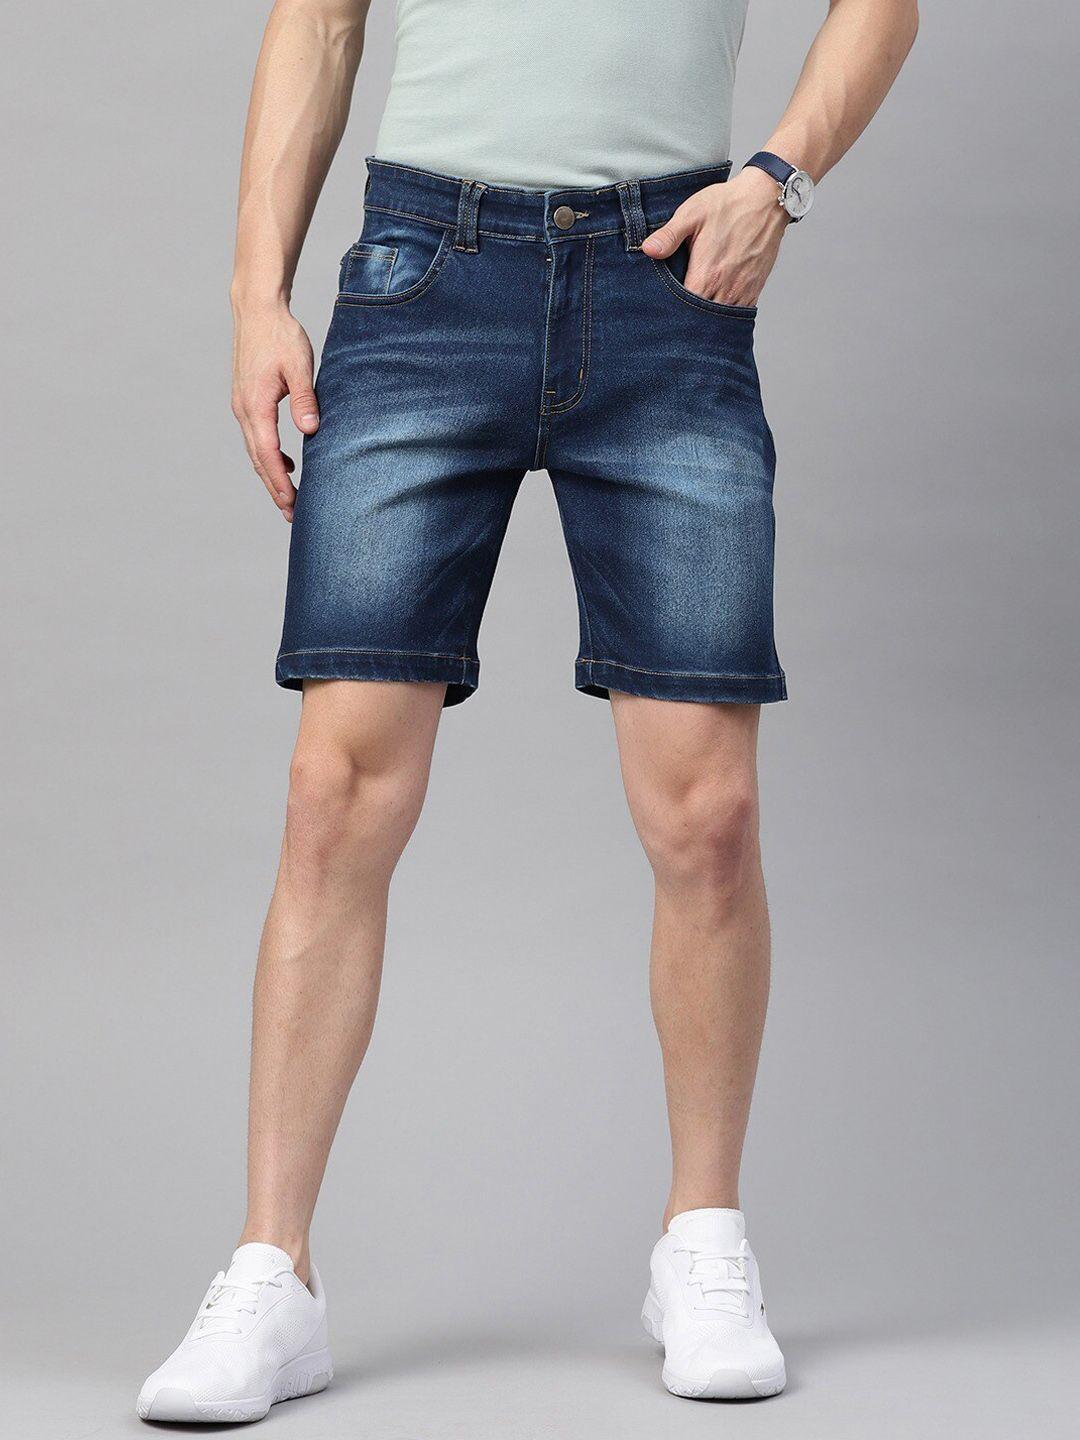 hubberholme men navy blue washed slim fit denim shorts